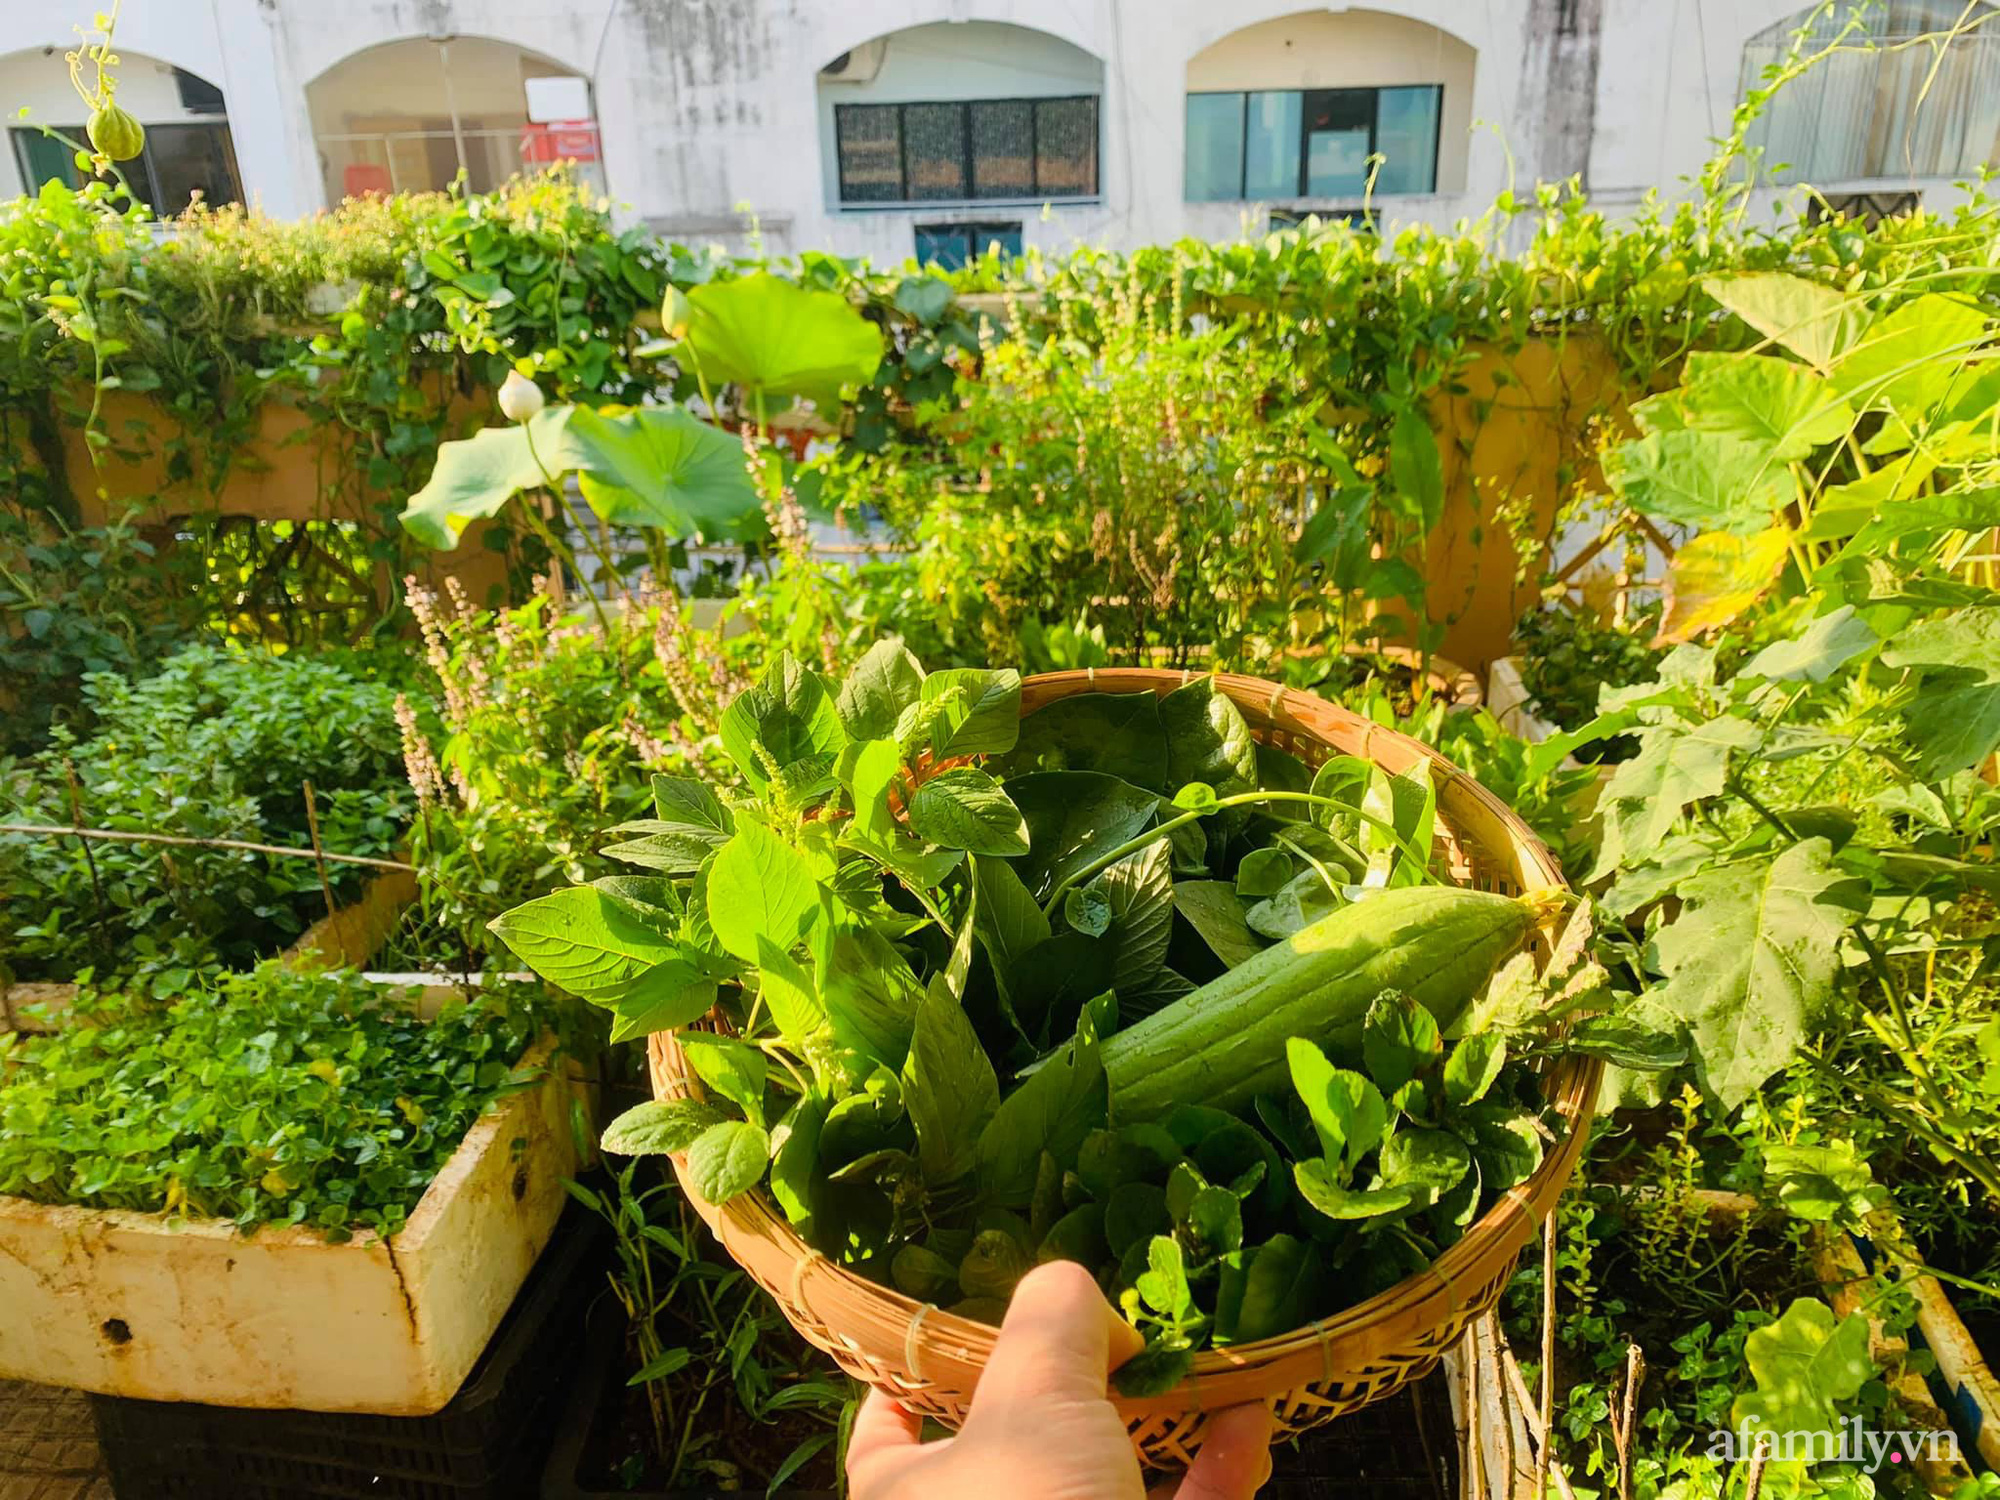 Sân thượng 20m2 xanh mướt có đủ rau, hoa, góc thưởng trà thư giãn ở Sài Gòn - Ảnh 10.